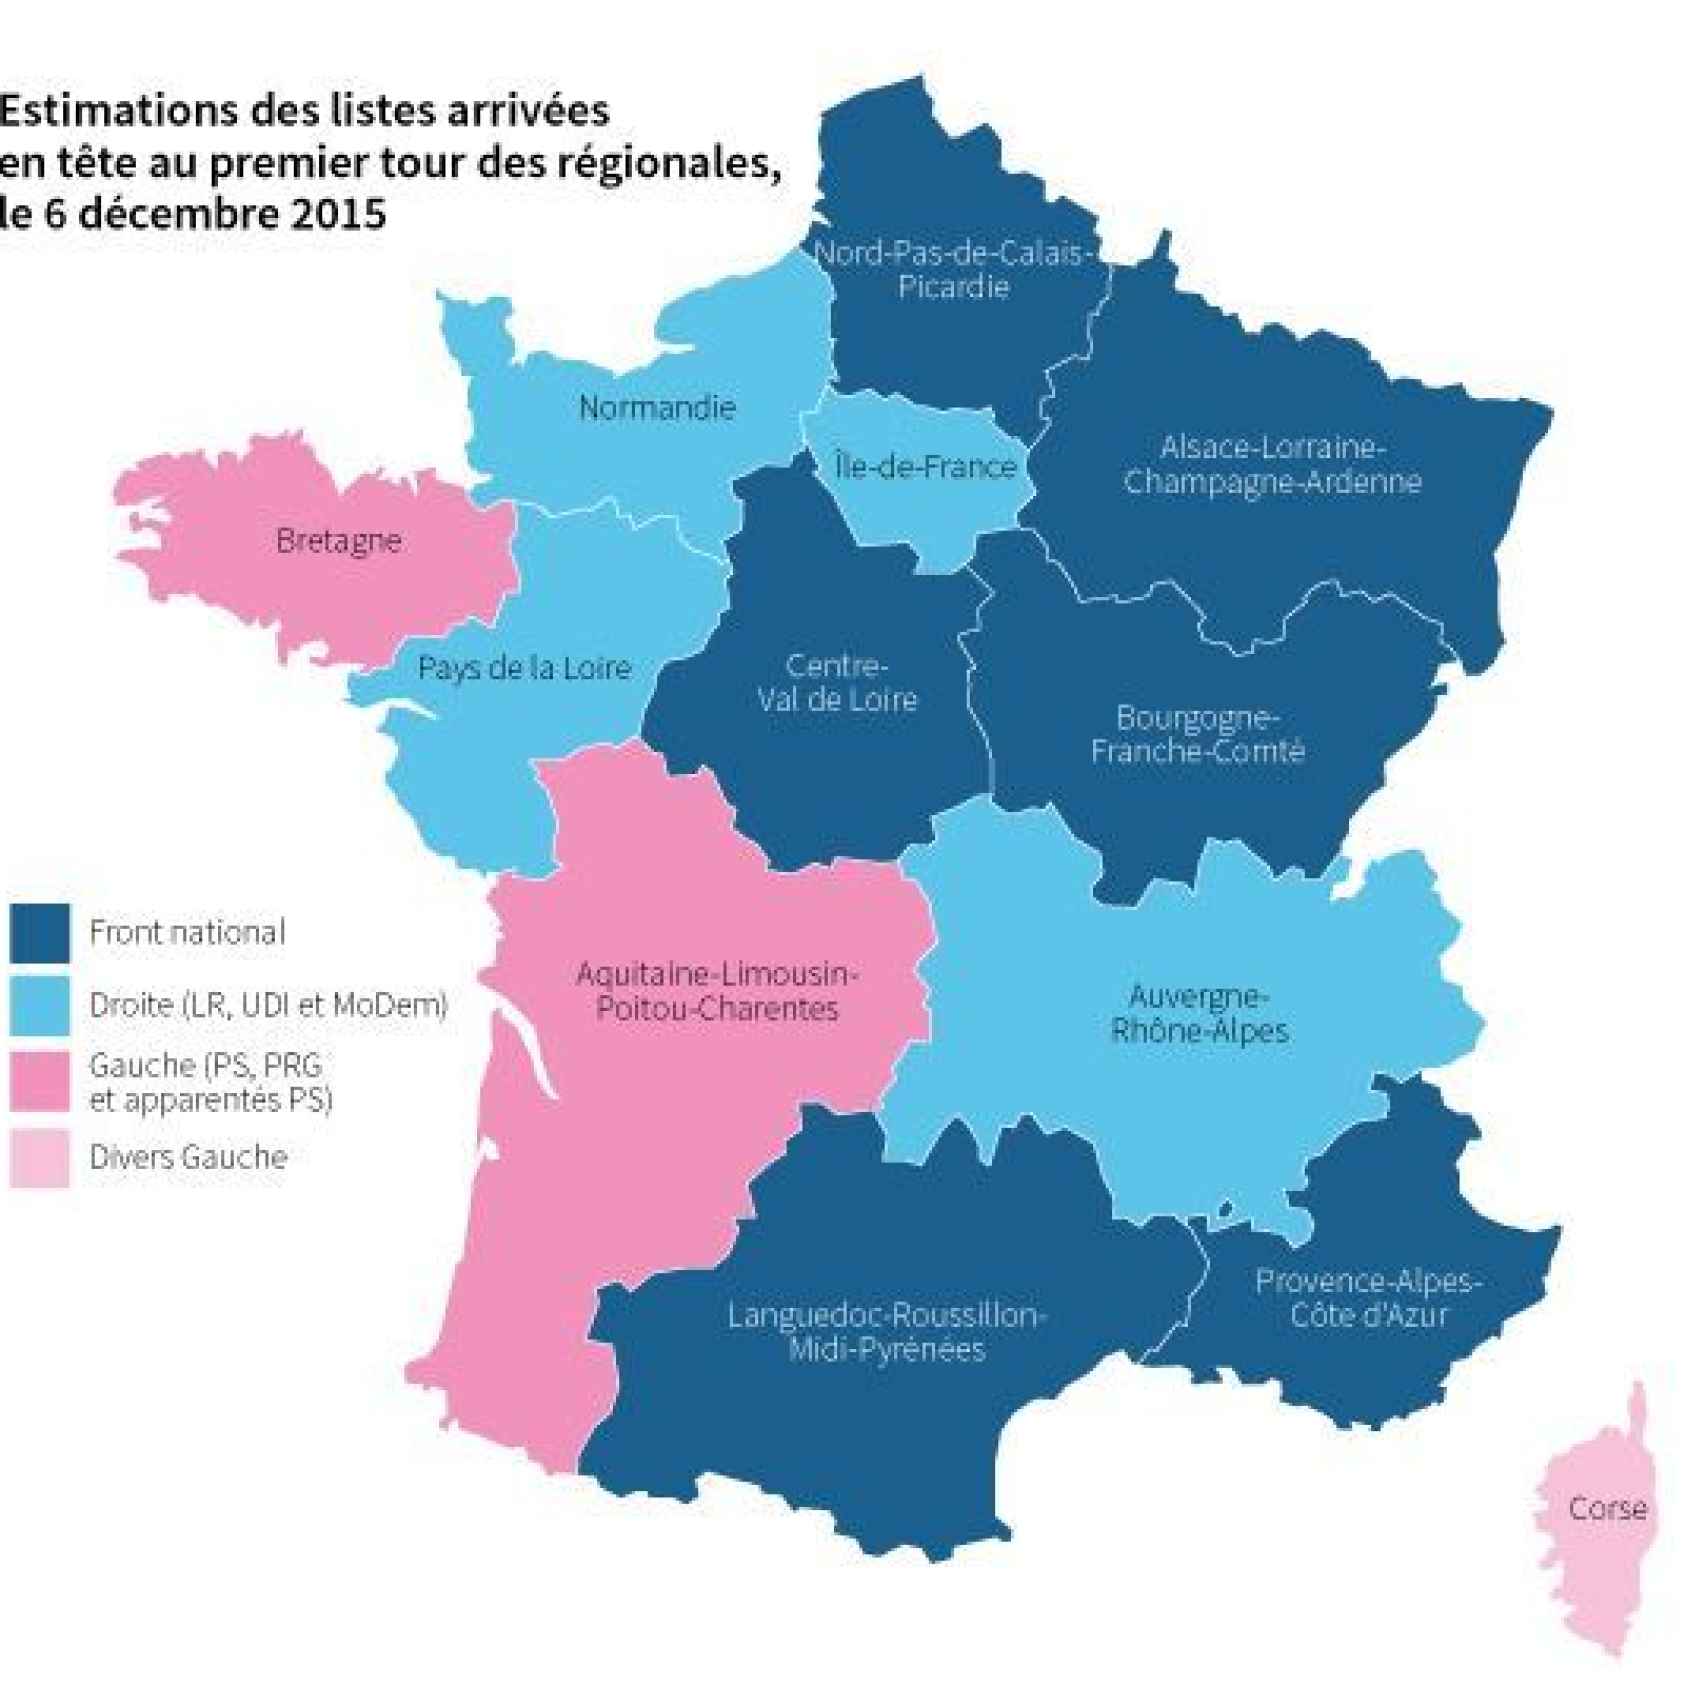 Gráfico del diario Le Monde que muestra las regiones que han votado a Frente Nacional